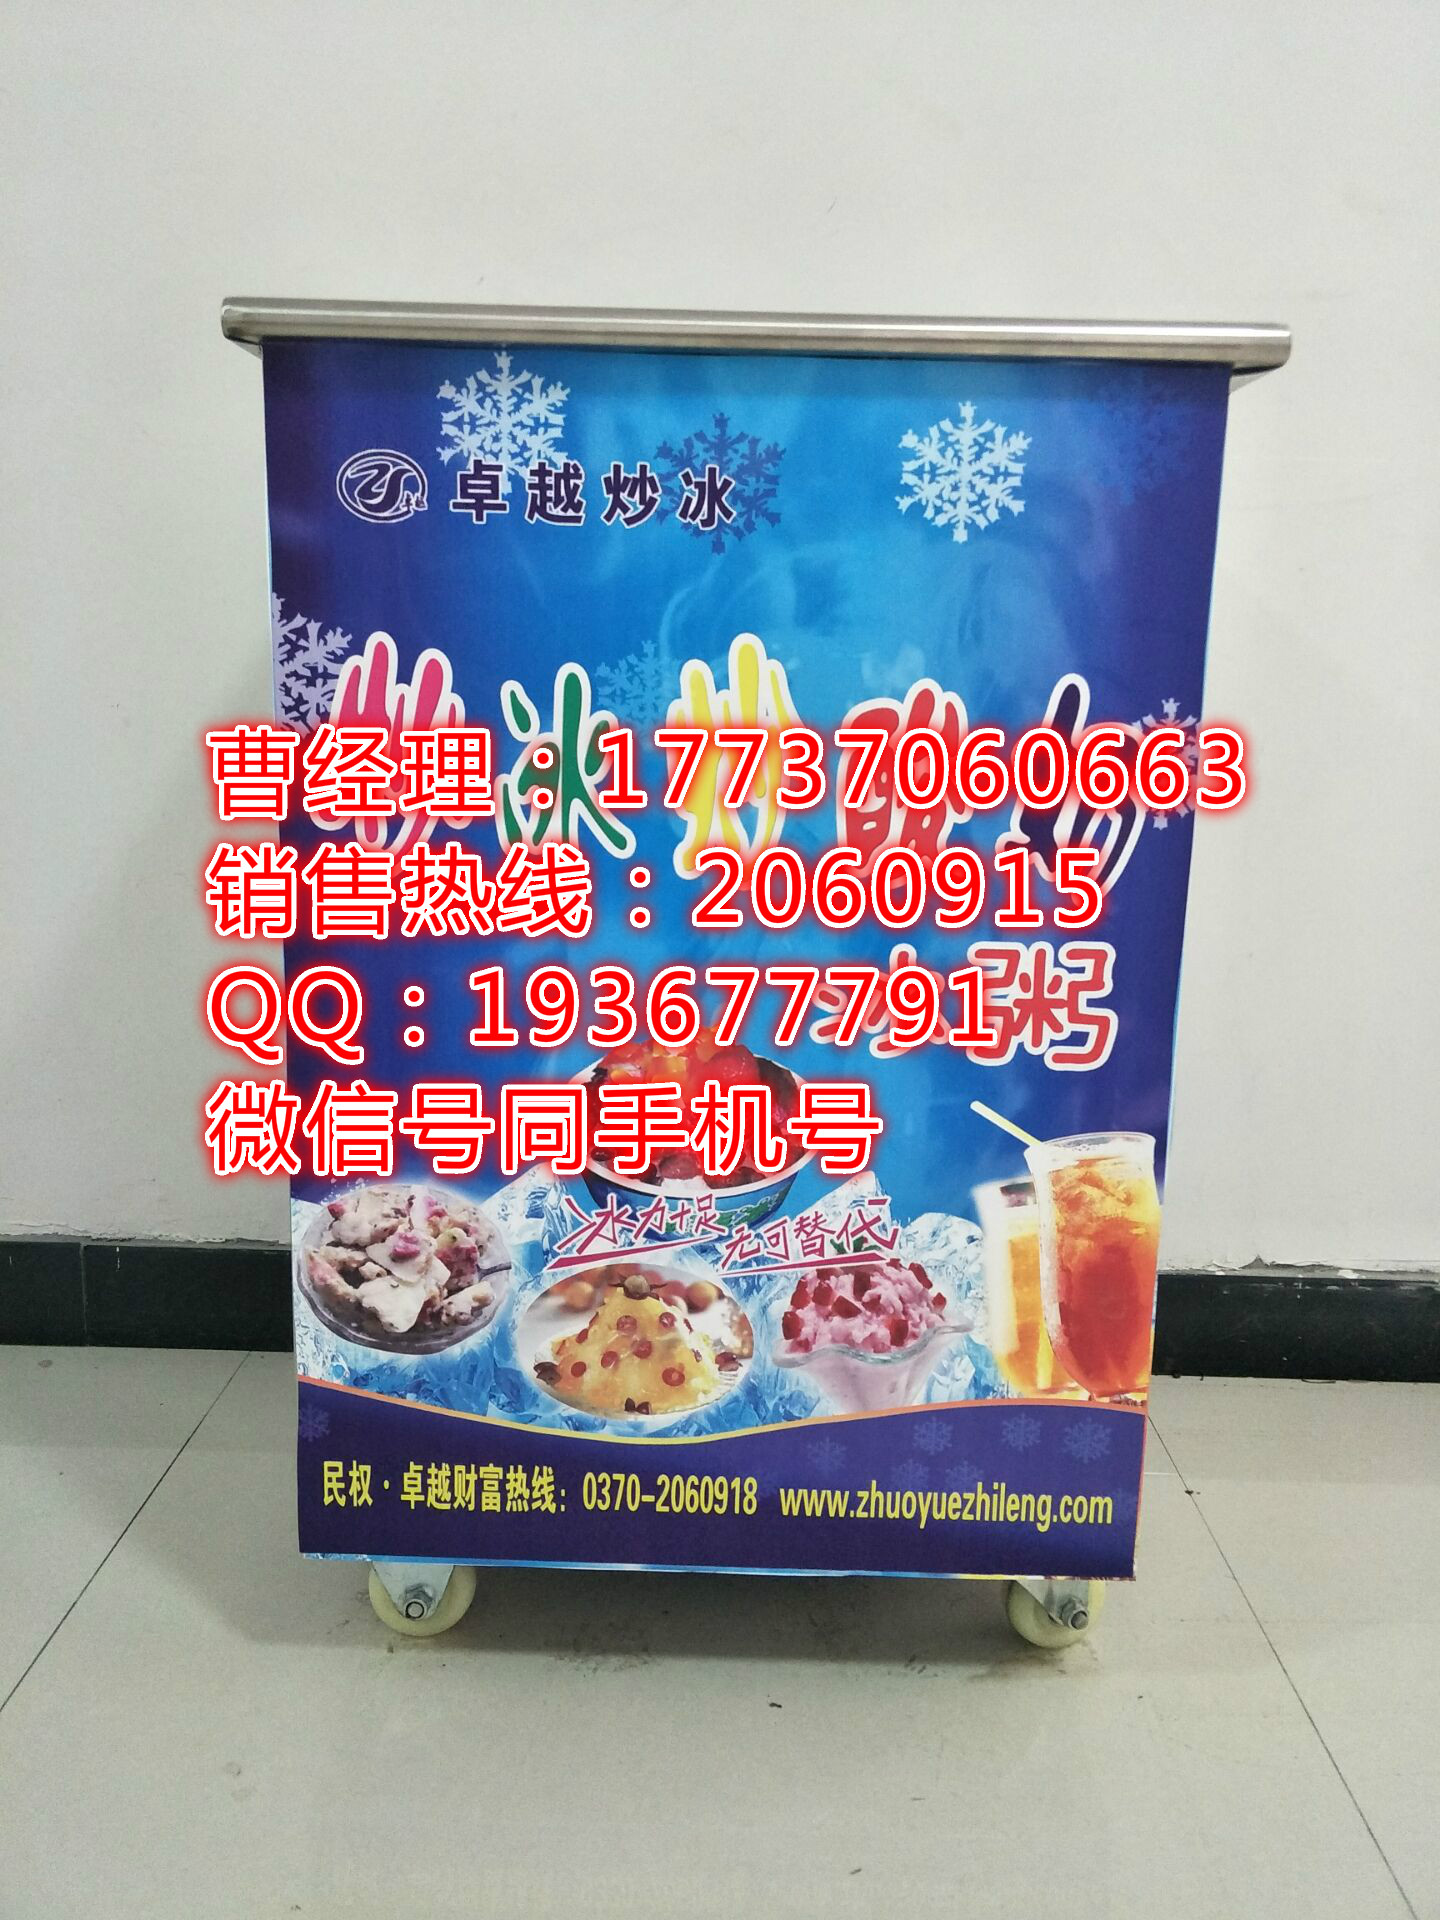 炒酸奶机郑州炒酸奶机 炒冰淇淋机